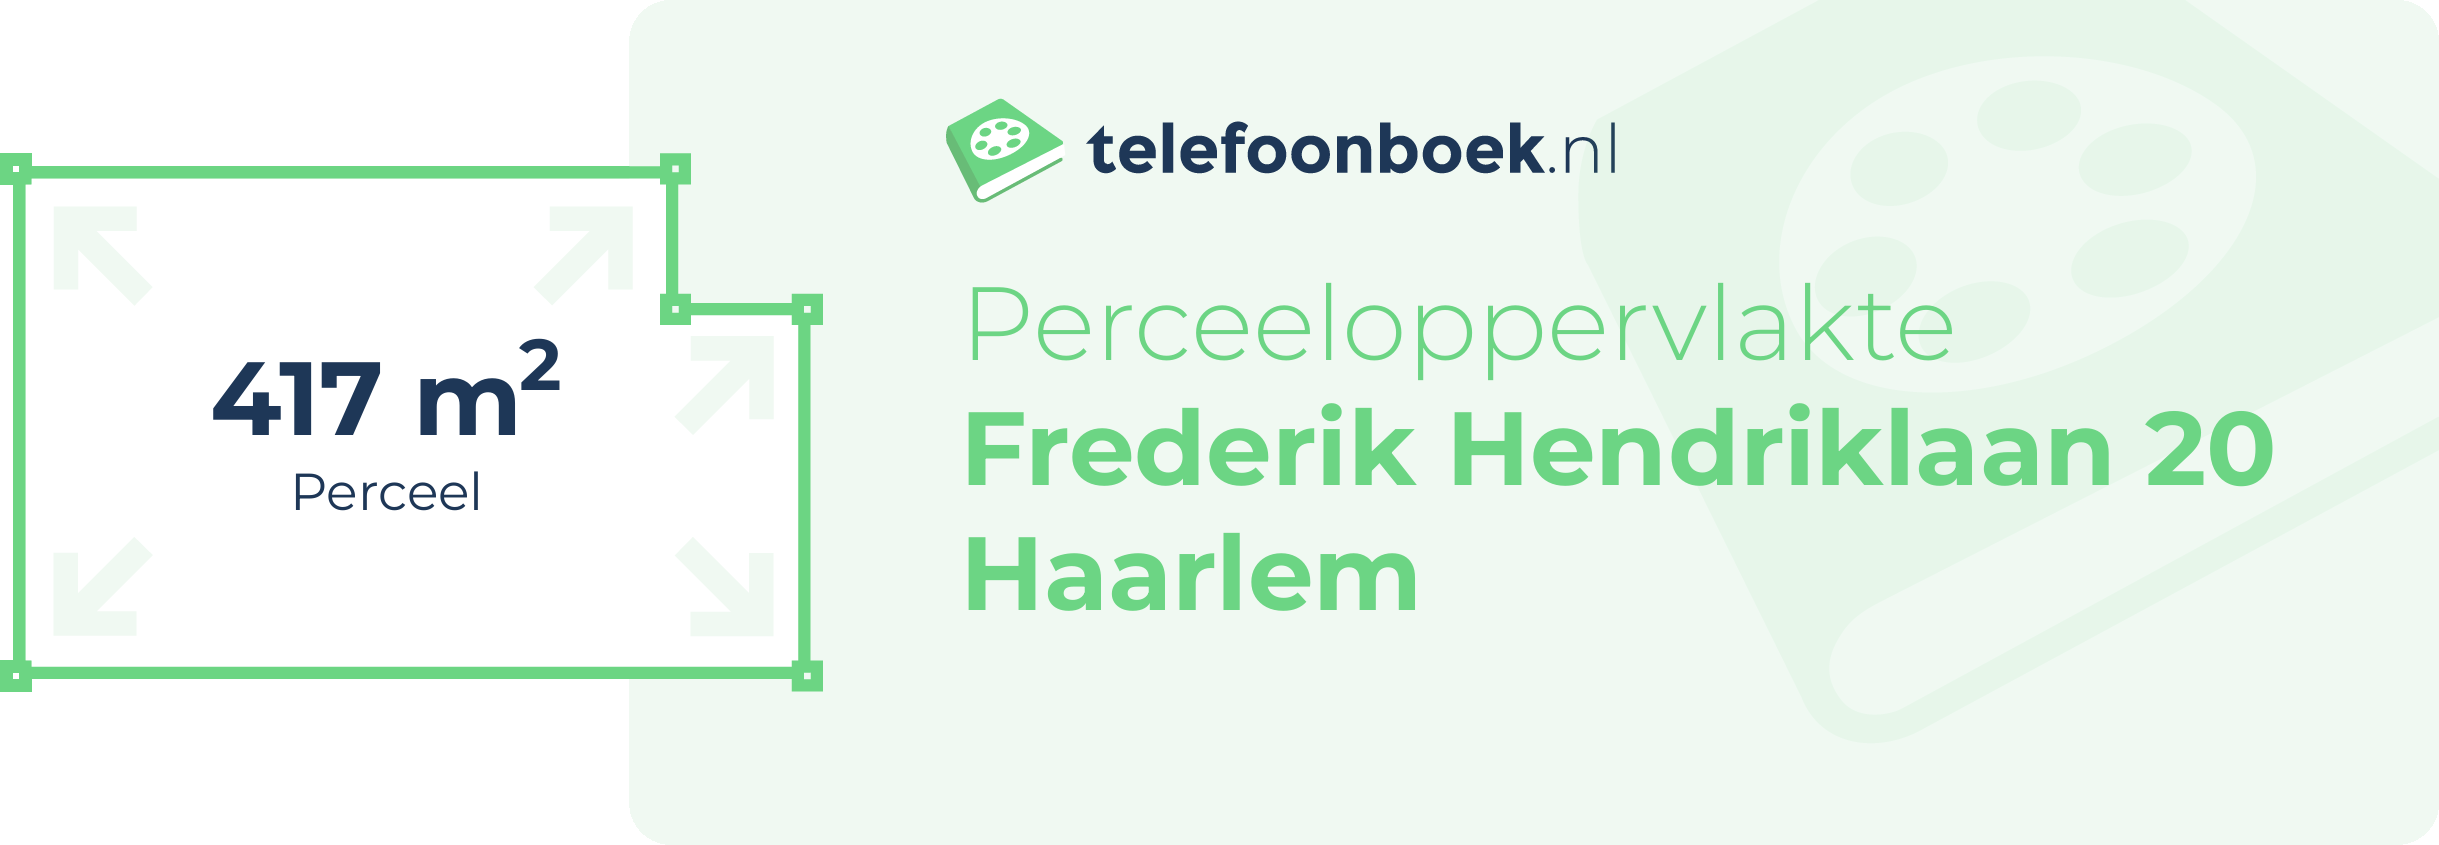 Perceeloppervlakte Frederik Hendriklaan 20 Haarlem